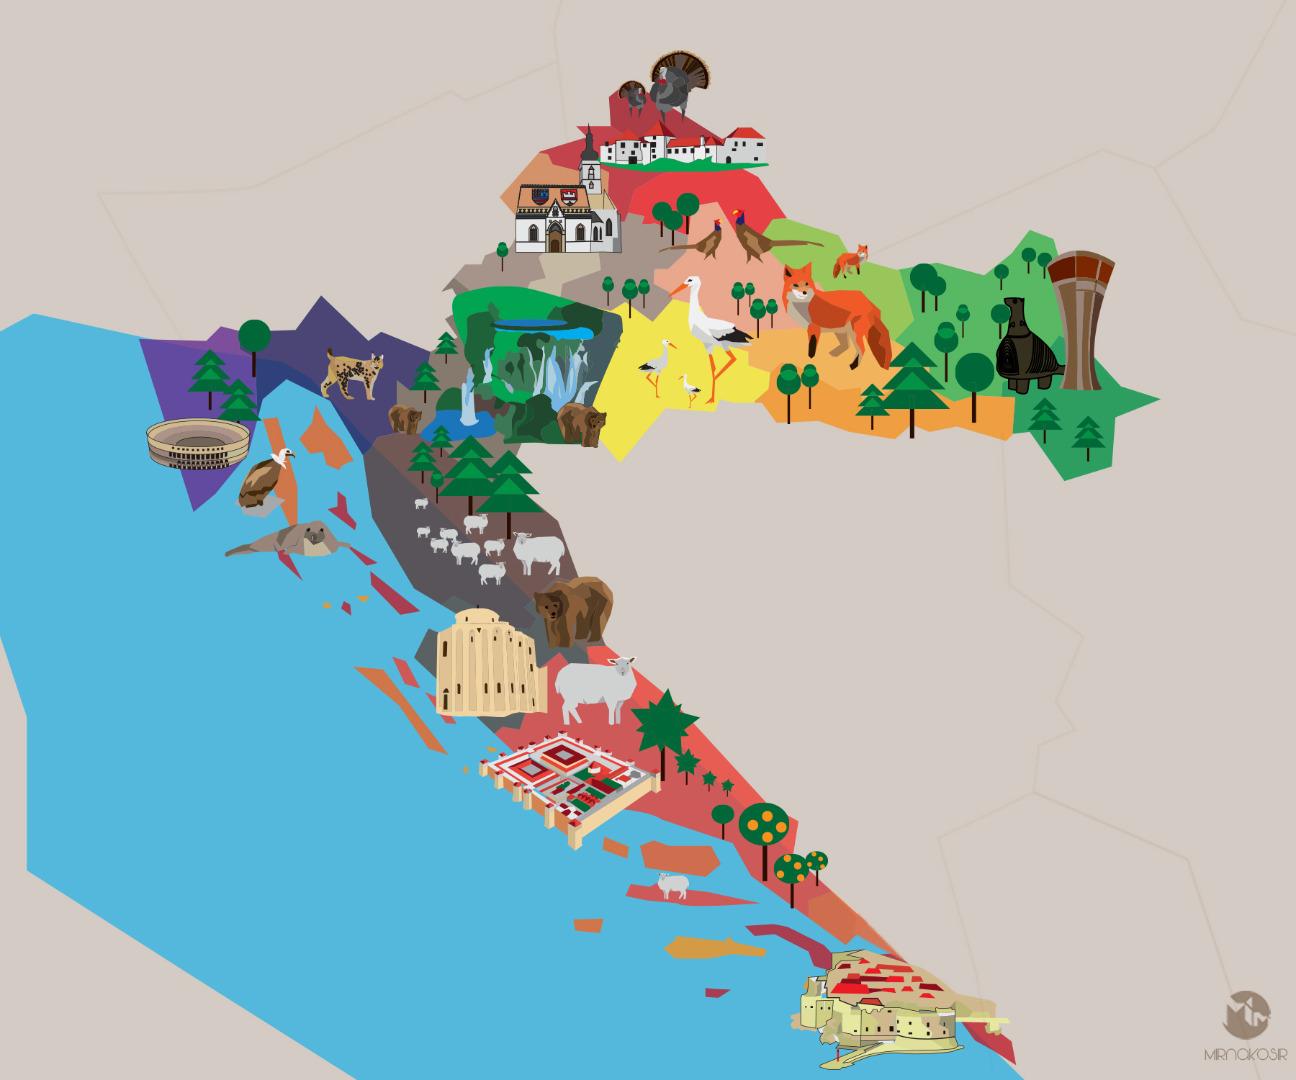 croatia tourism data